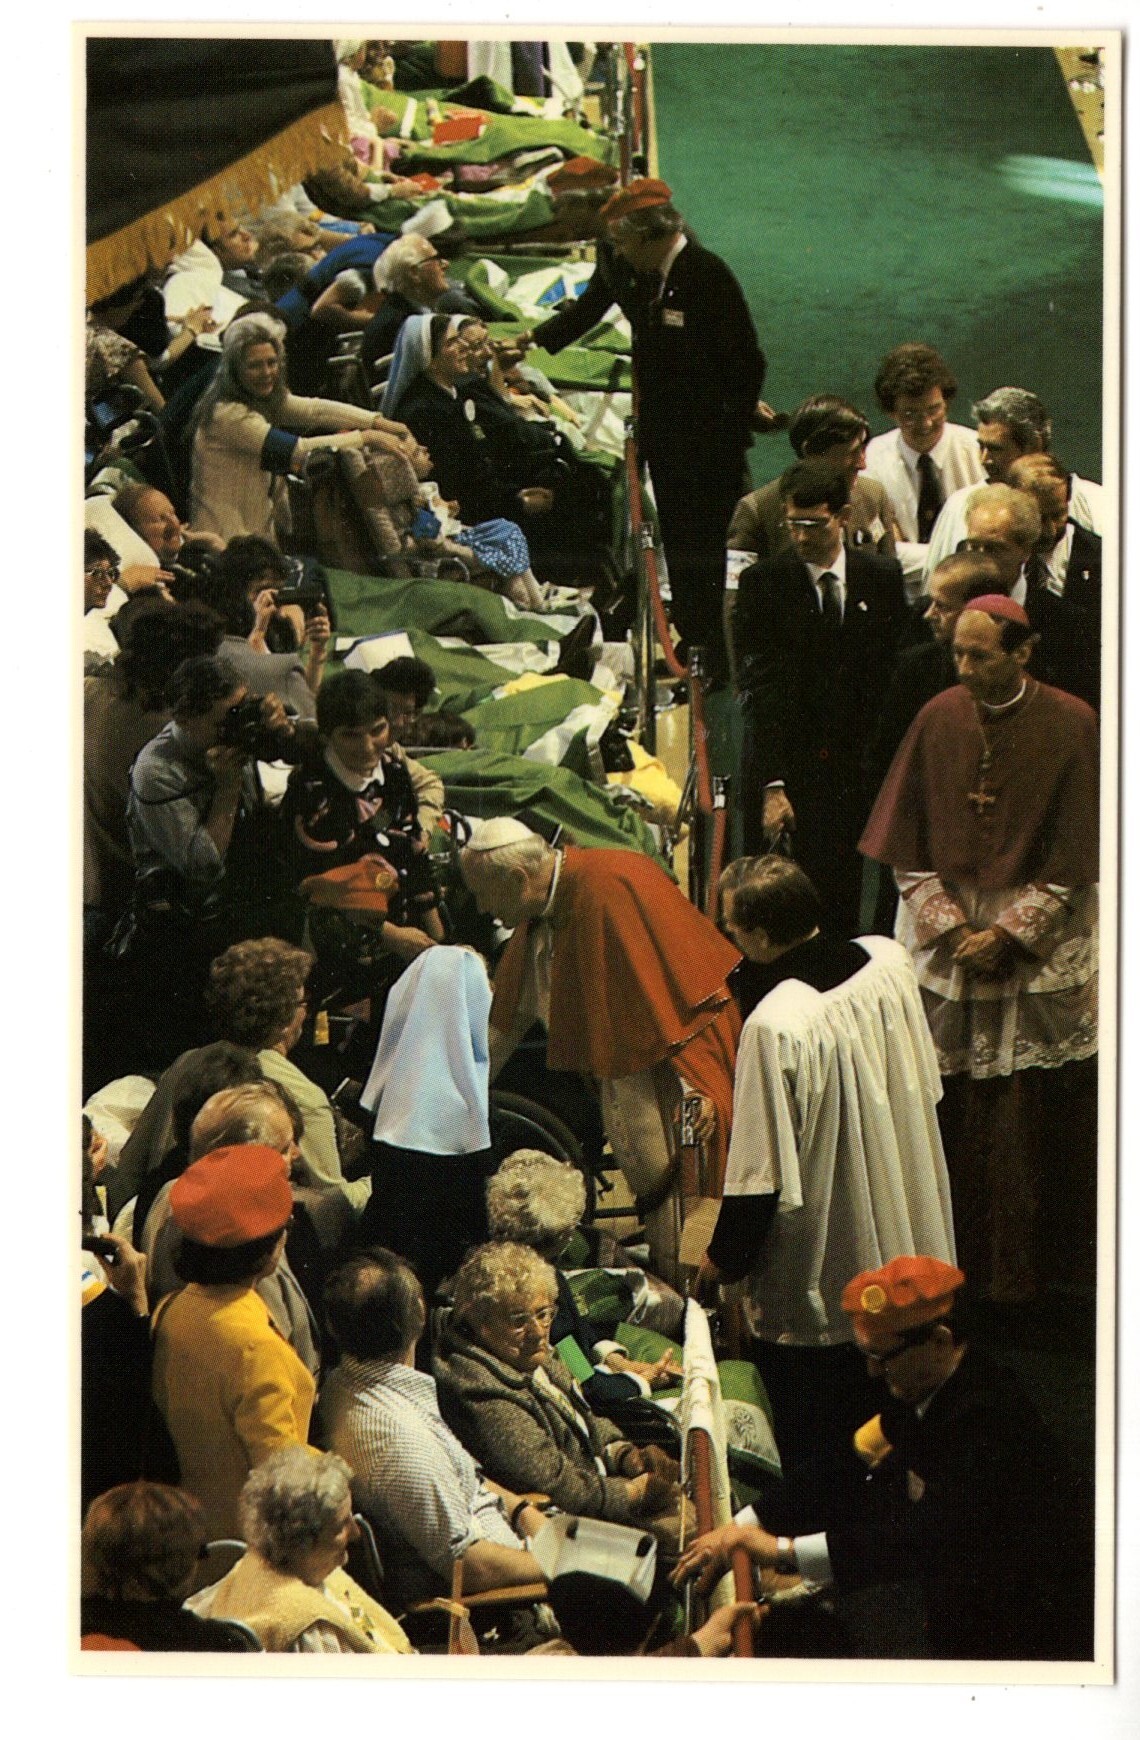 papal visit 1982